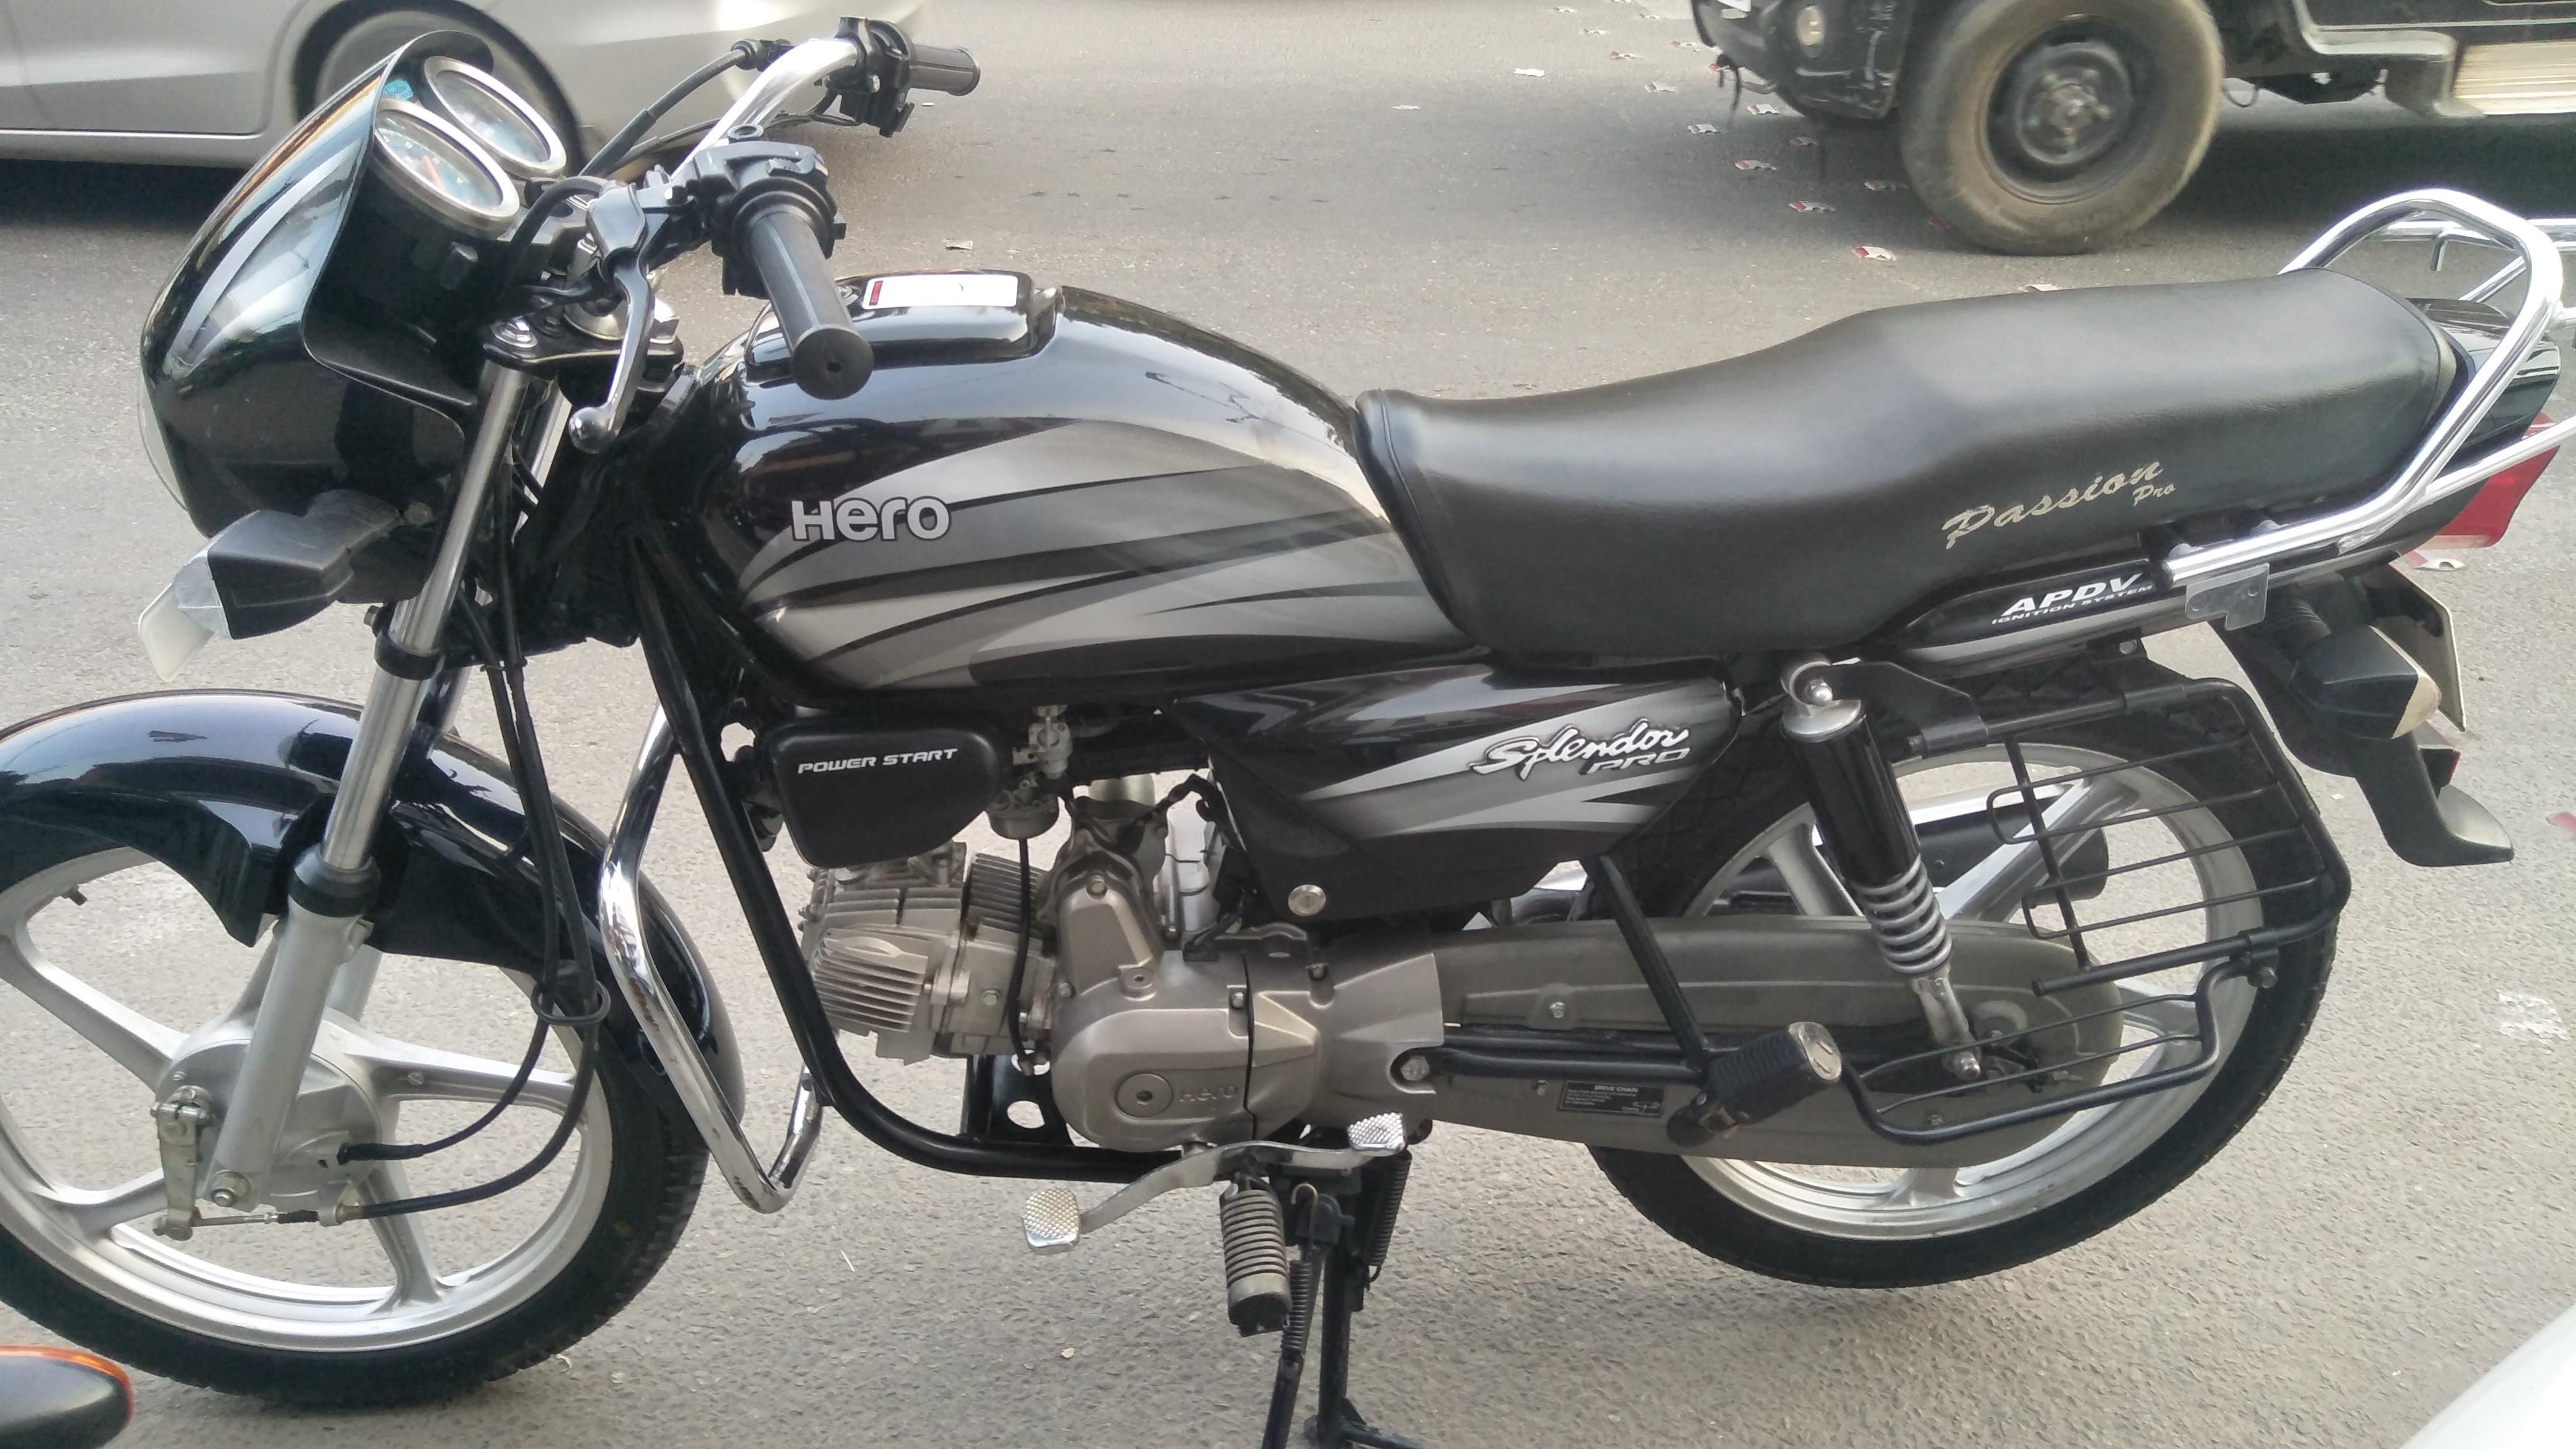 Hero Splendor Pro Bike for Sale in Ludhiana- (Id ...